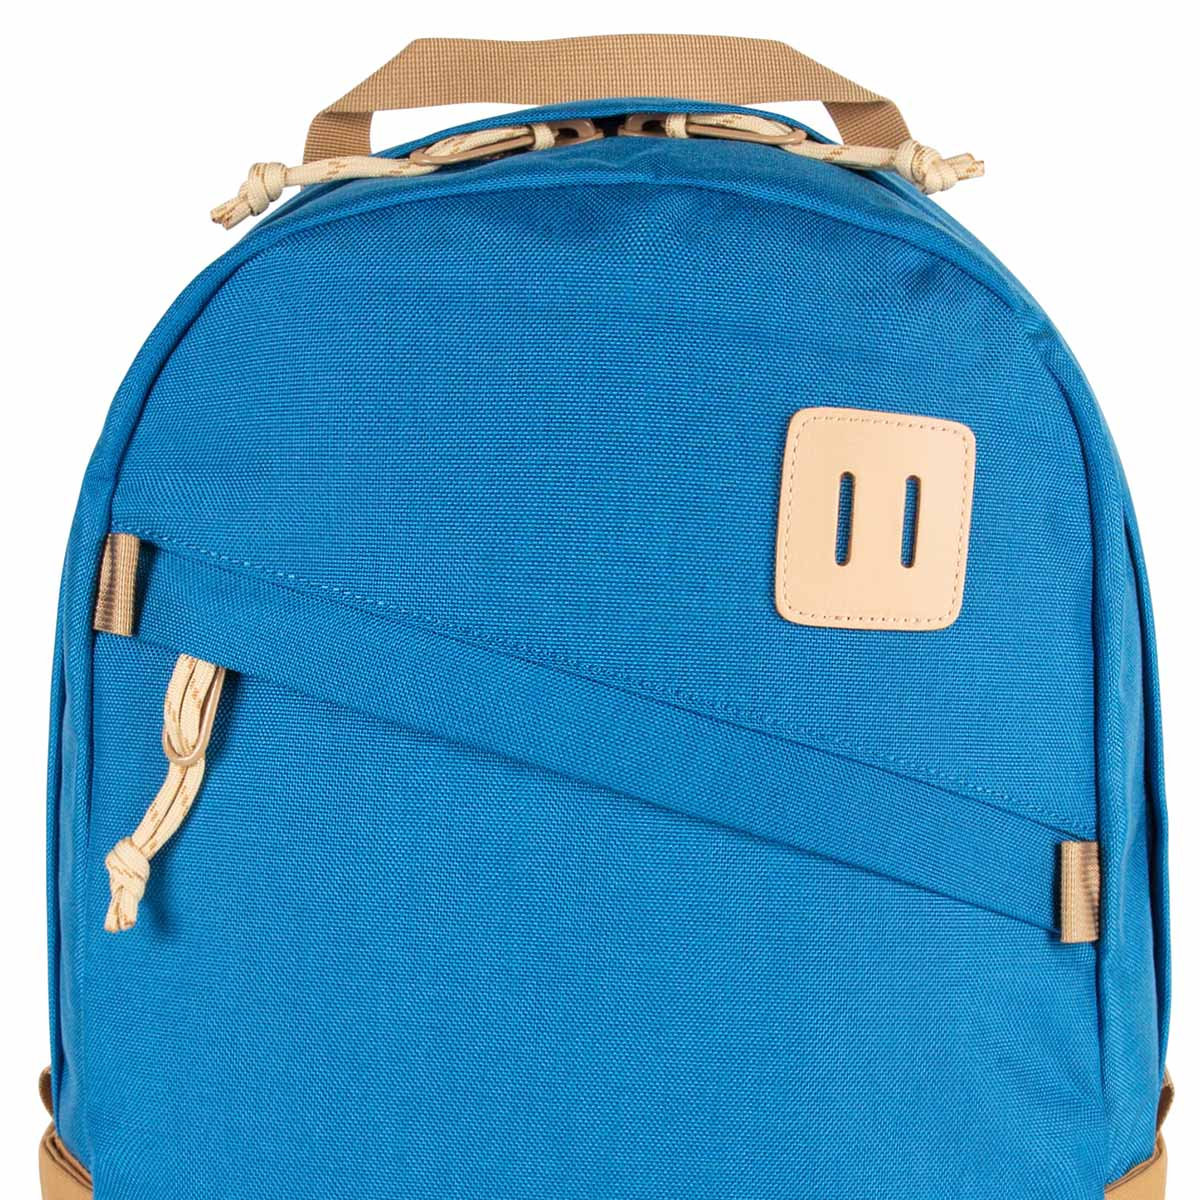 Topo Designs Daypack Classic Blue/Khaki, starker Rucksack in 1000D Nylon mit 15 Zoll Laptopfach und 21.6 Liter Stauraum